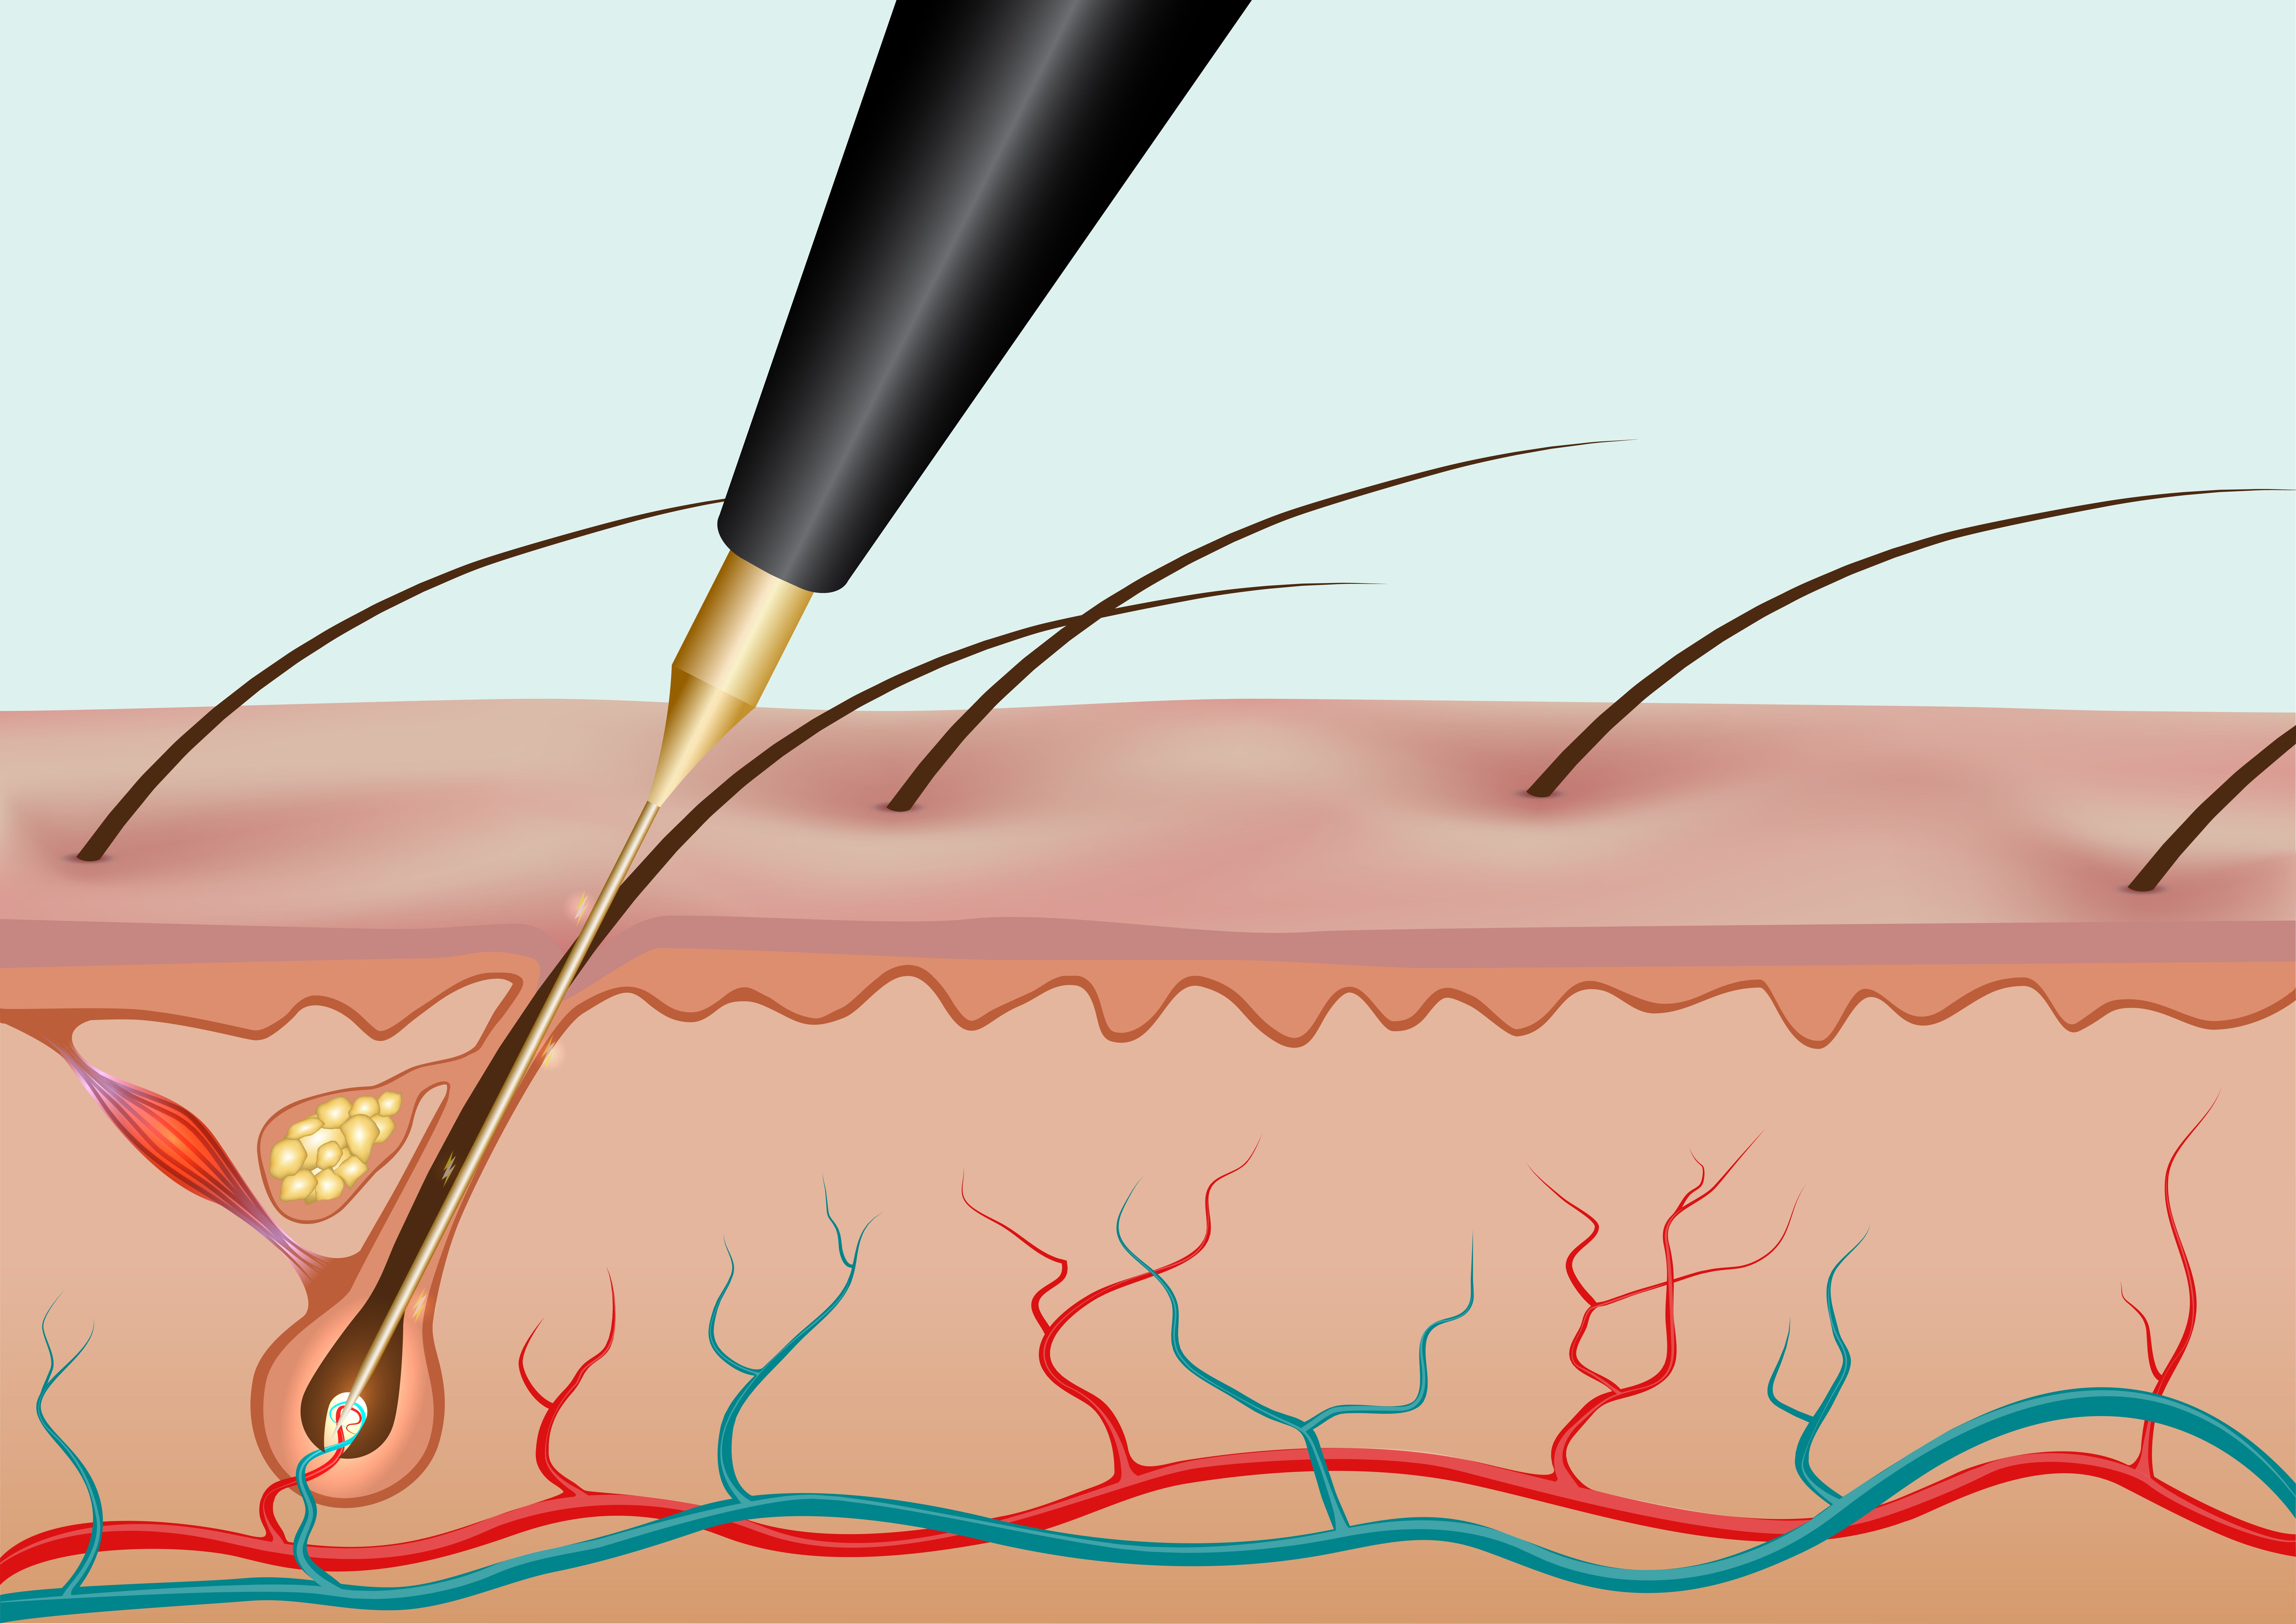 Burning hair root with needle epilation